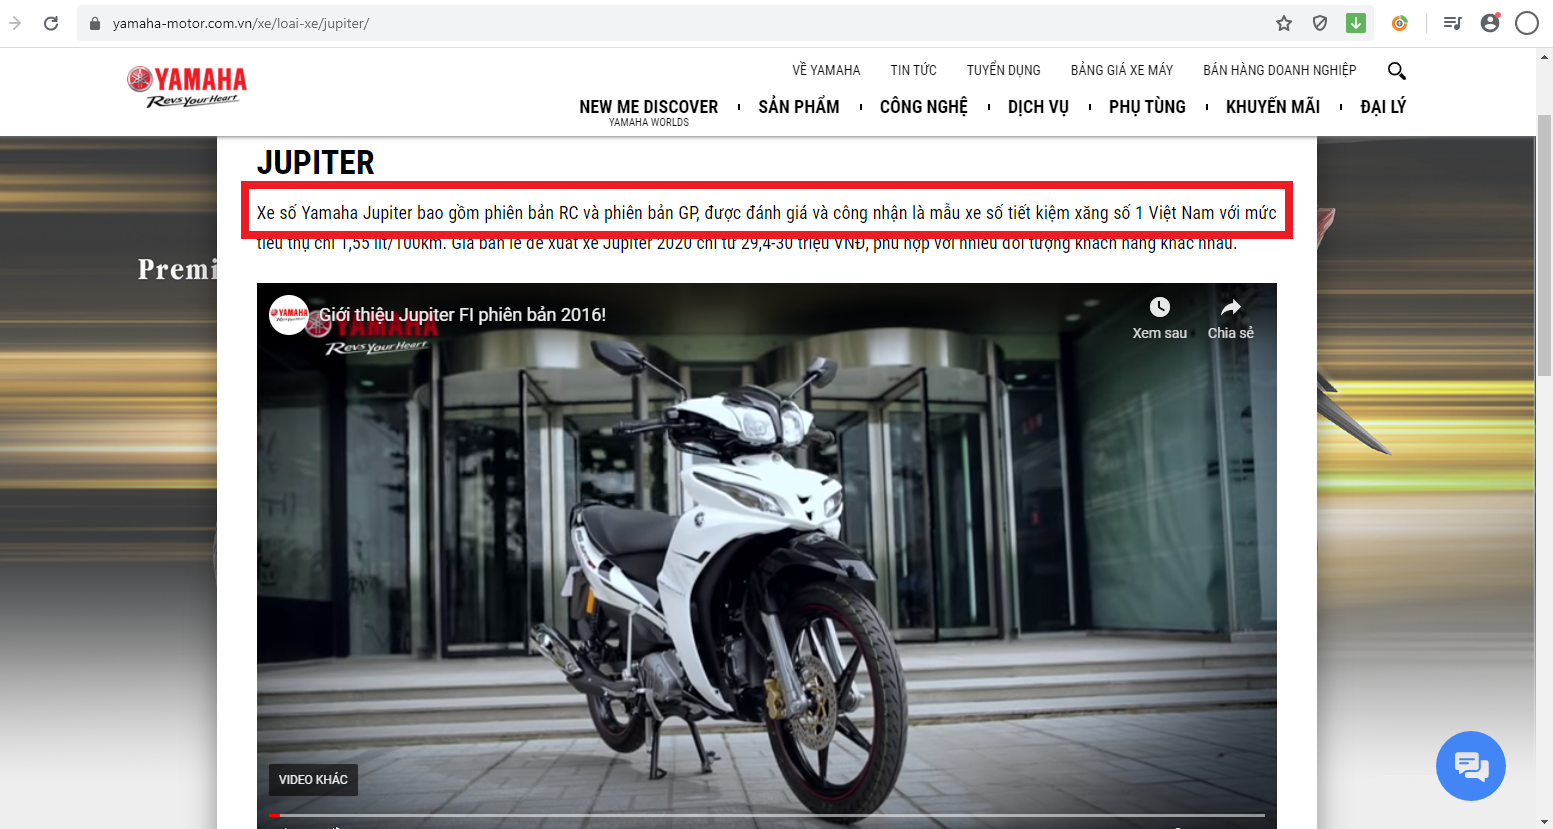 Cần làm rõ việc công ty Yamaha Motor lừa dối người tiêu dùng, quảng cáo một số mẫu xe tiết kiệm xăng số 1 Việt Nam khi chưa thẩm định